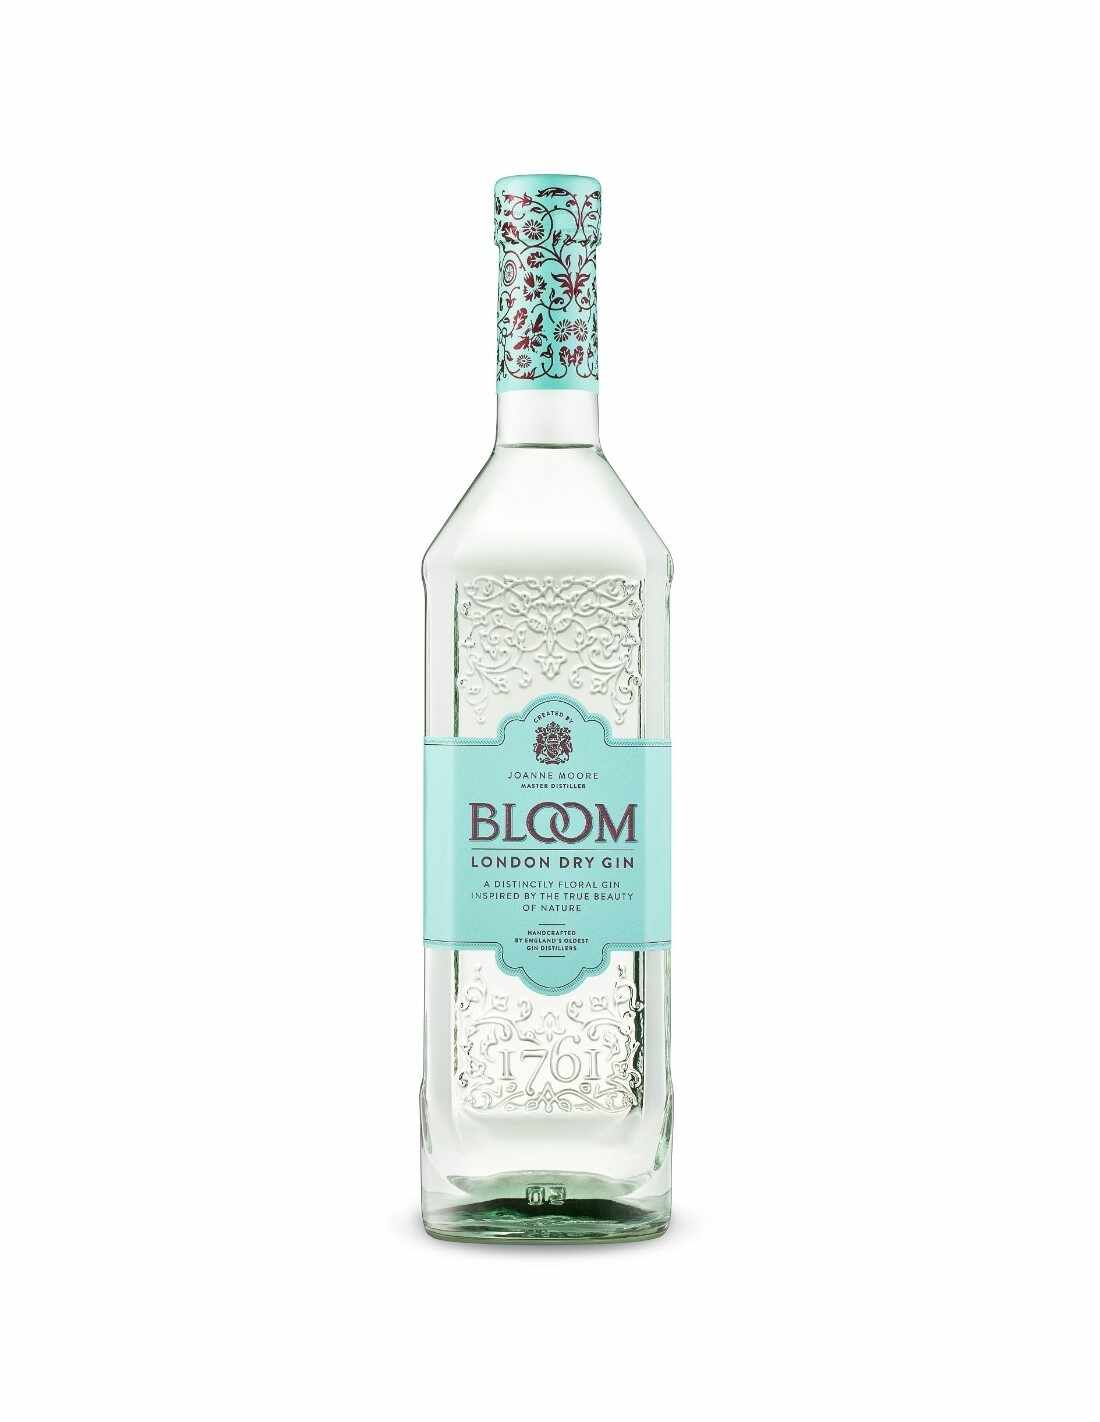 Gin Bloom, 40% alc., 0.7L, Anglia